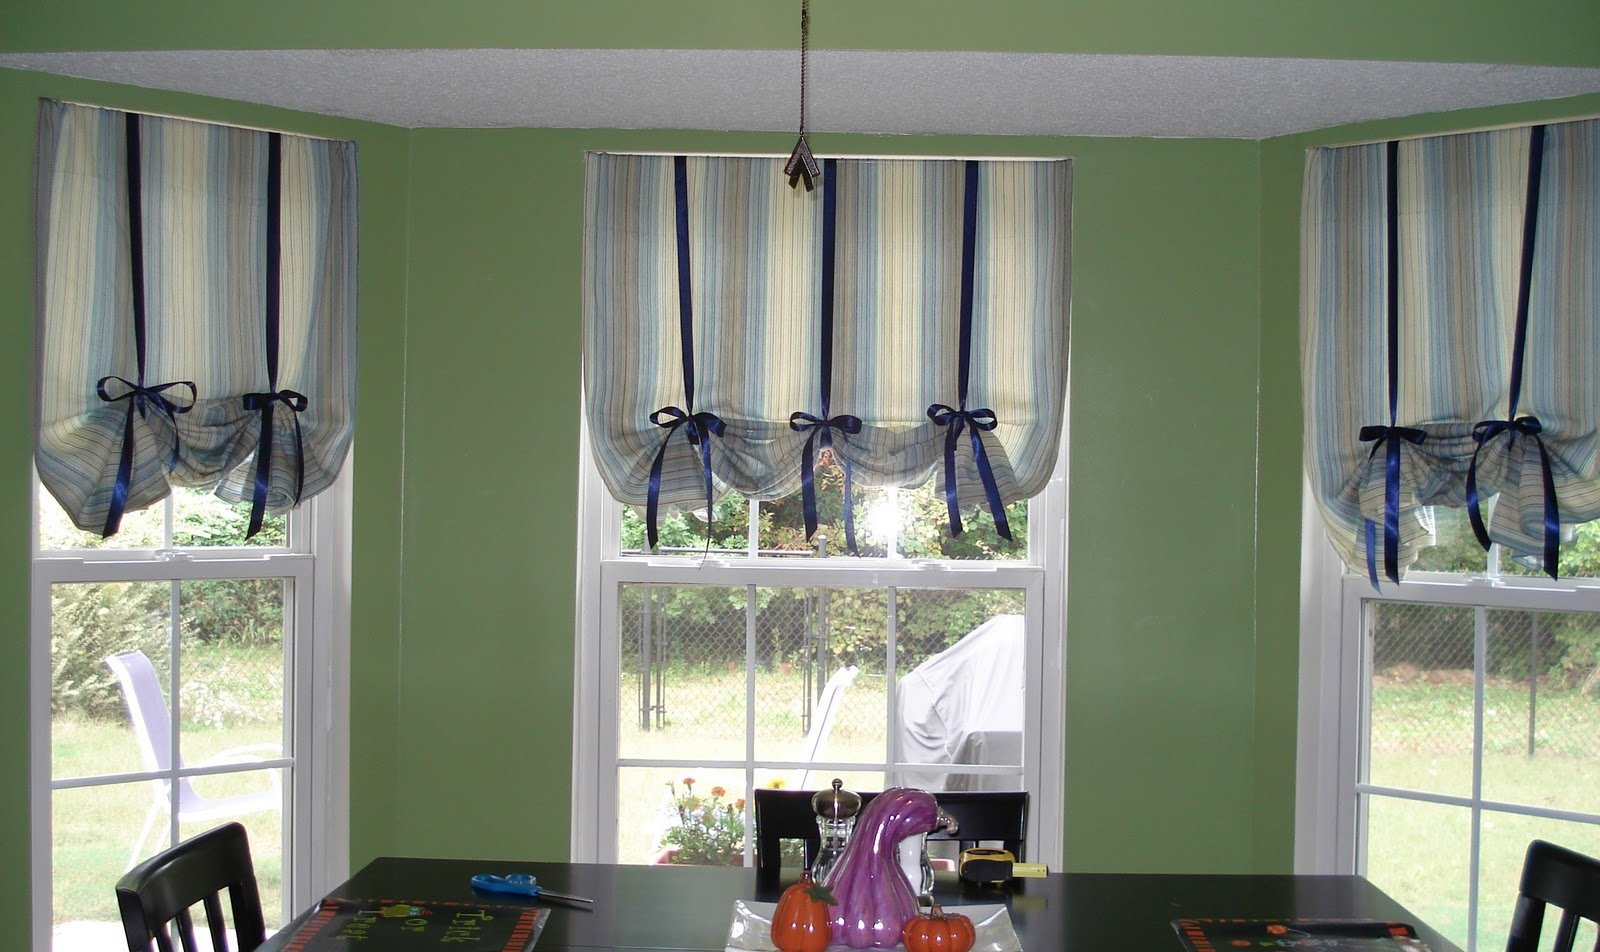 d993e3c12574240e5ebac8e00b6f0aca Як підібрати тюль до штор правильно: поєднання кольорів, фото штор в квіточку, смужку, спальню, кухню